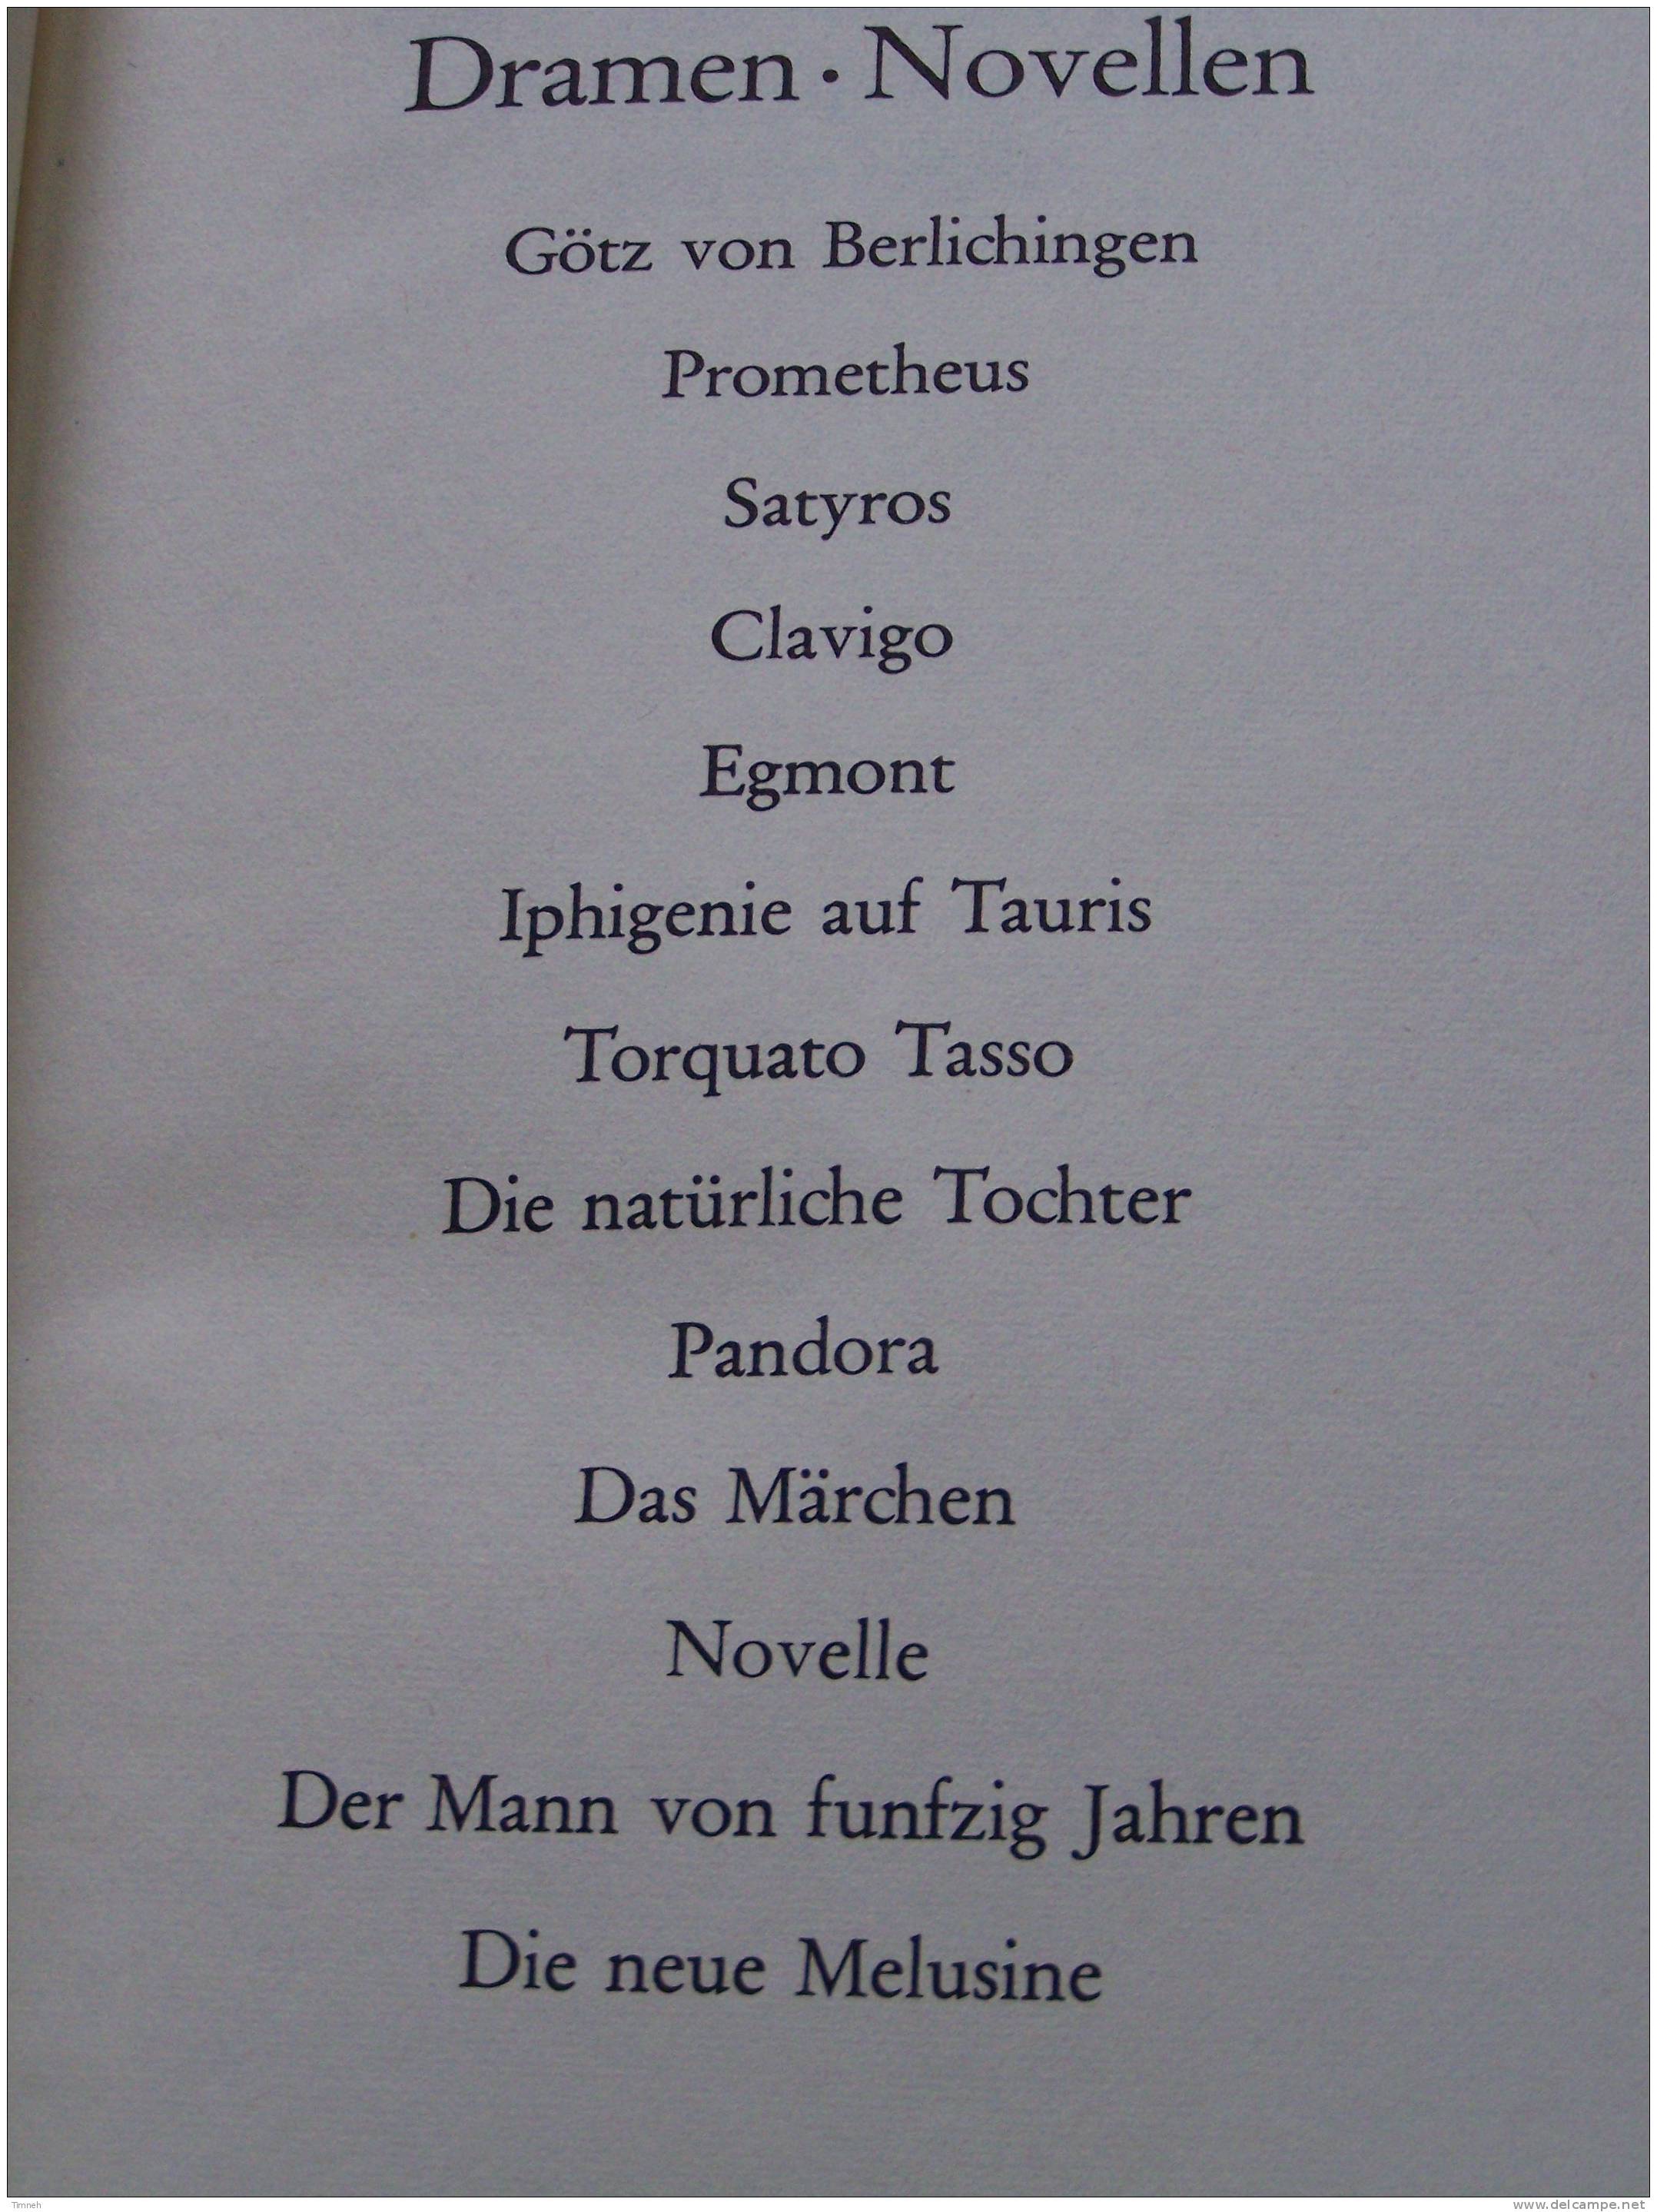 GOETHE WERKE - 6 BANDEN TOMES - Insel Verlag 1965 - WERTHER MEISTER FAUST GEDICHTE DICHTUNG WARHEIT - Auteurs Int.